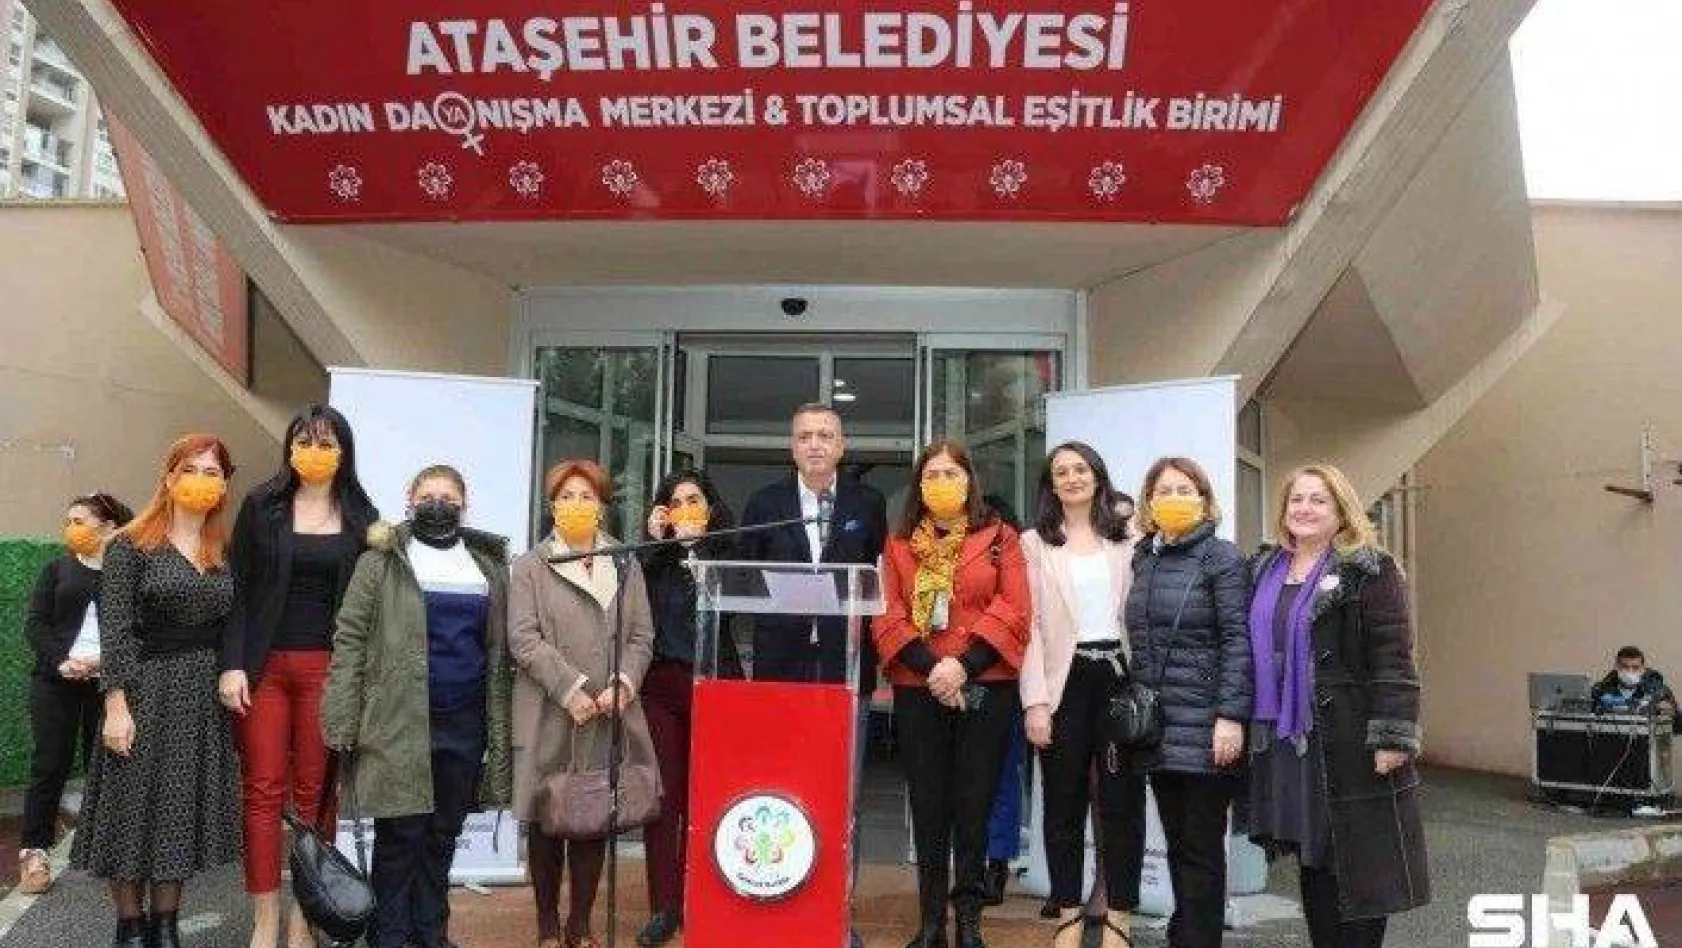 Ataşehir Belediyesi 'Kadın Dayanışma Merkezi' açıldı